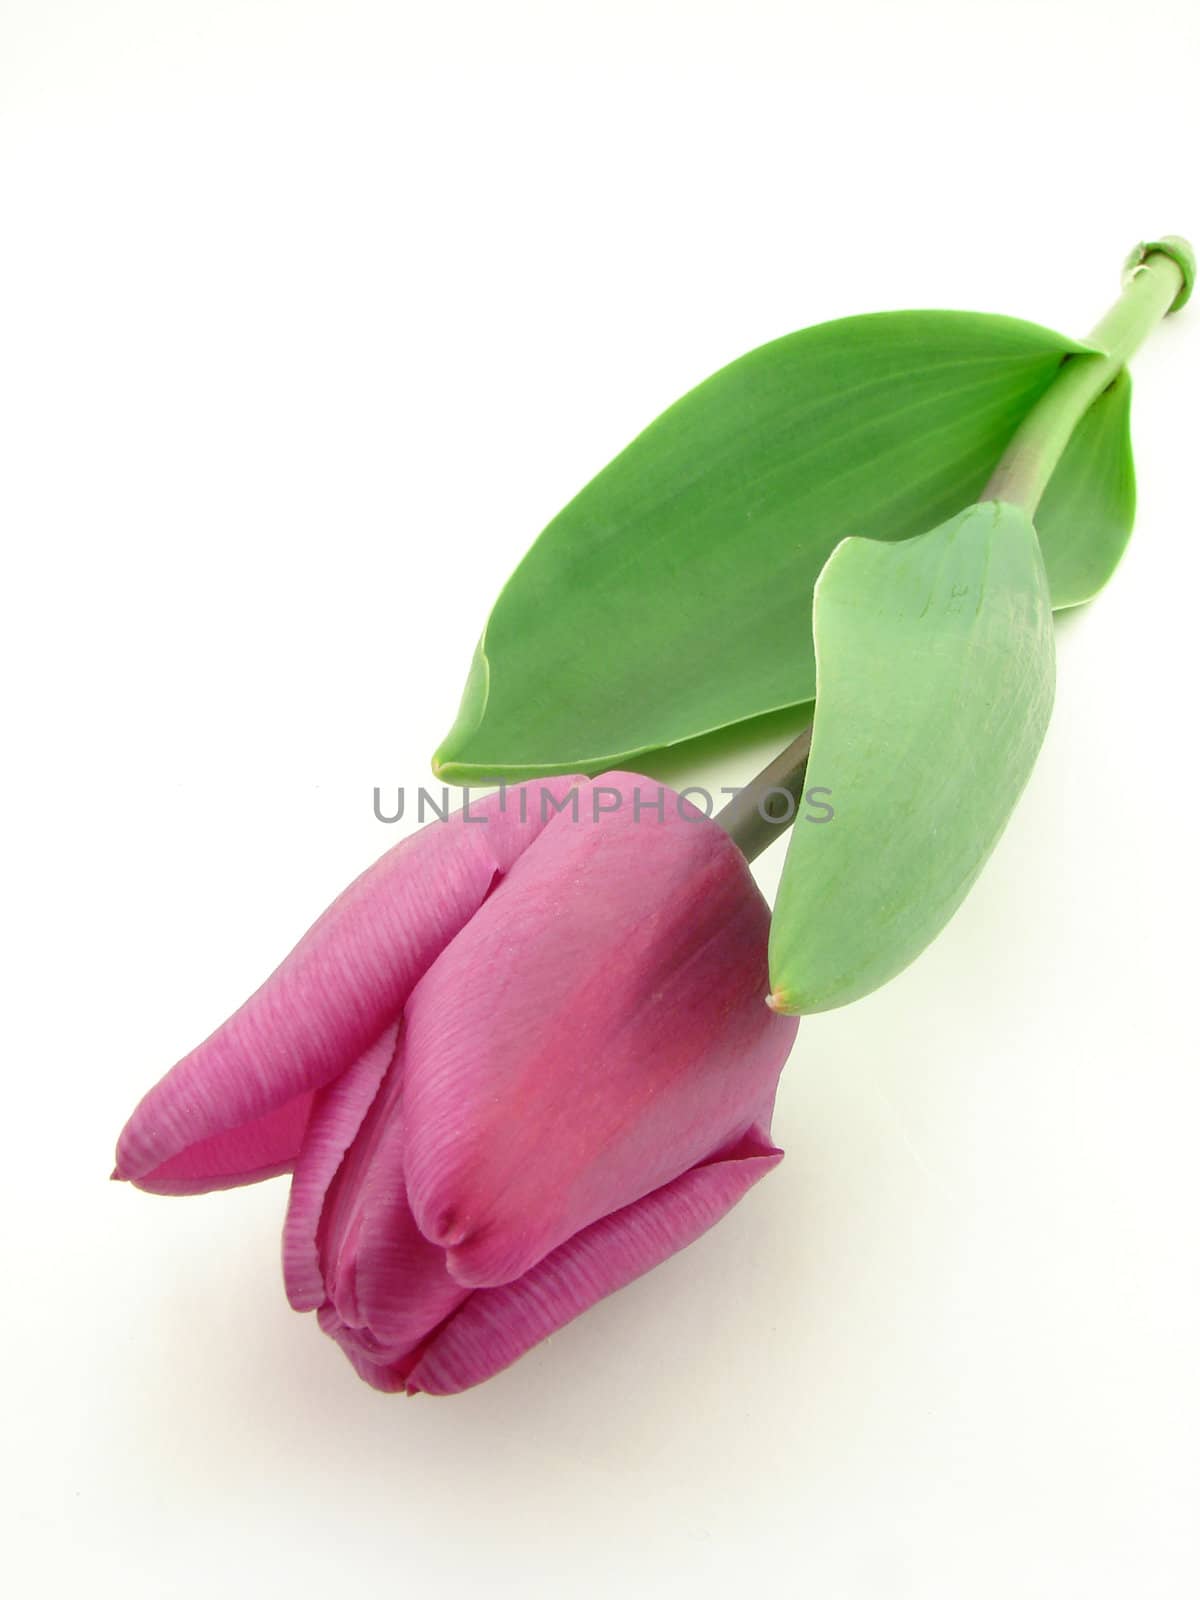 Violet tulip by morchella